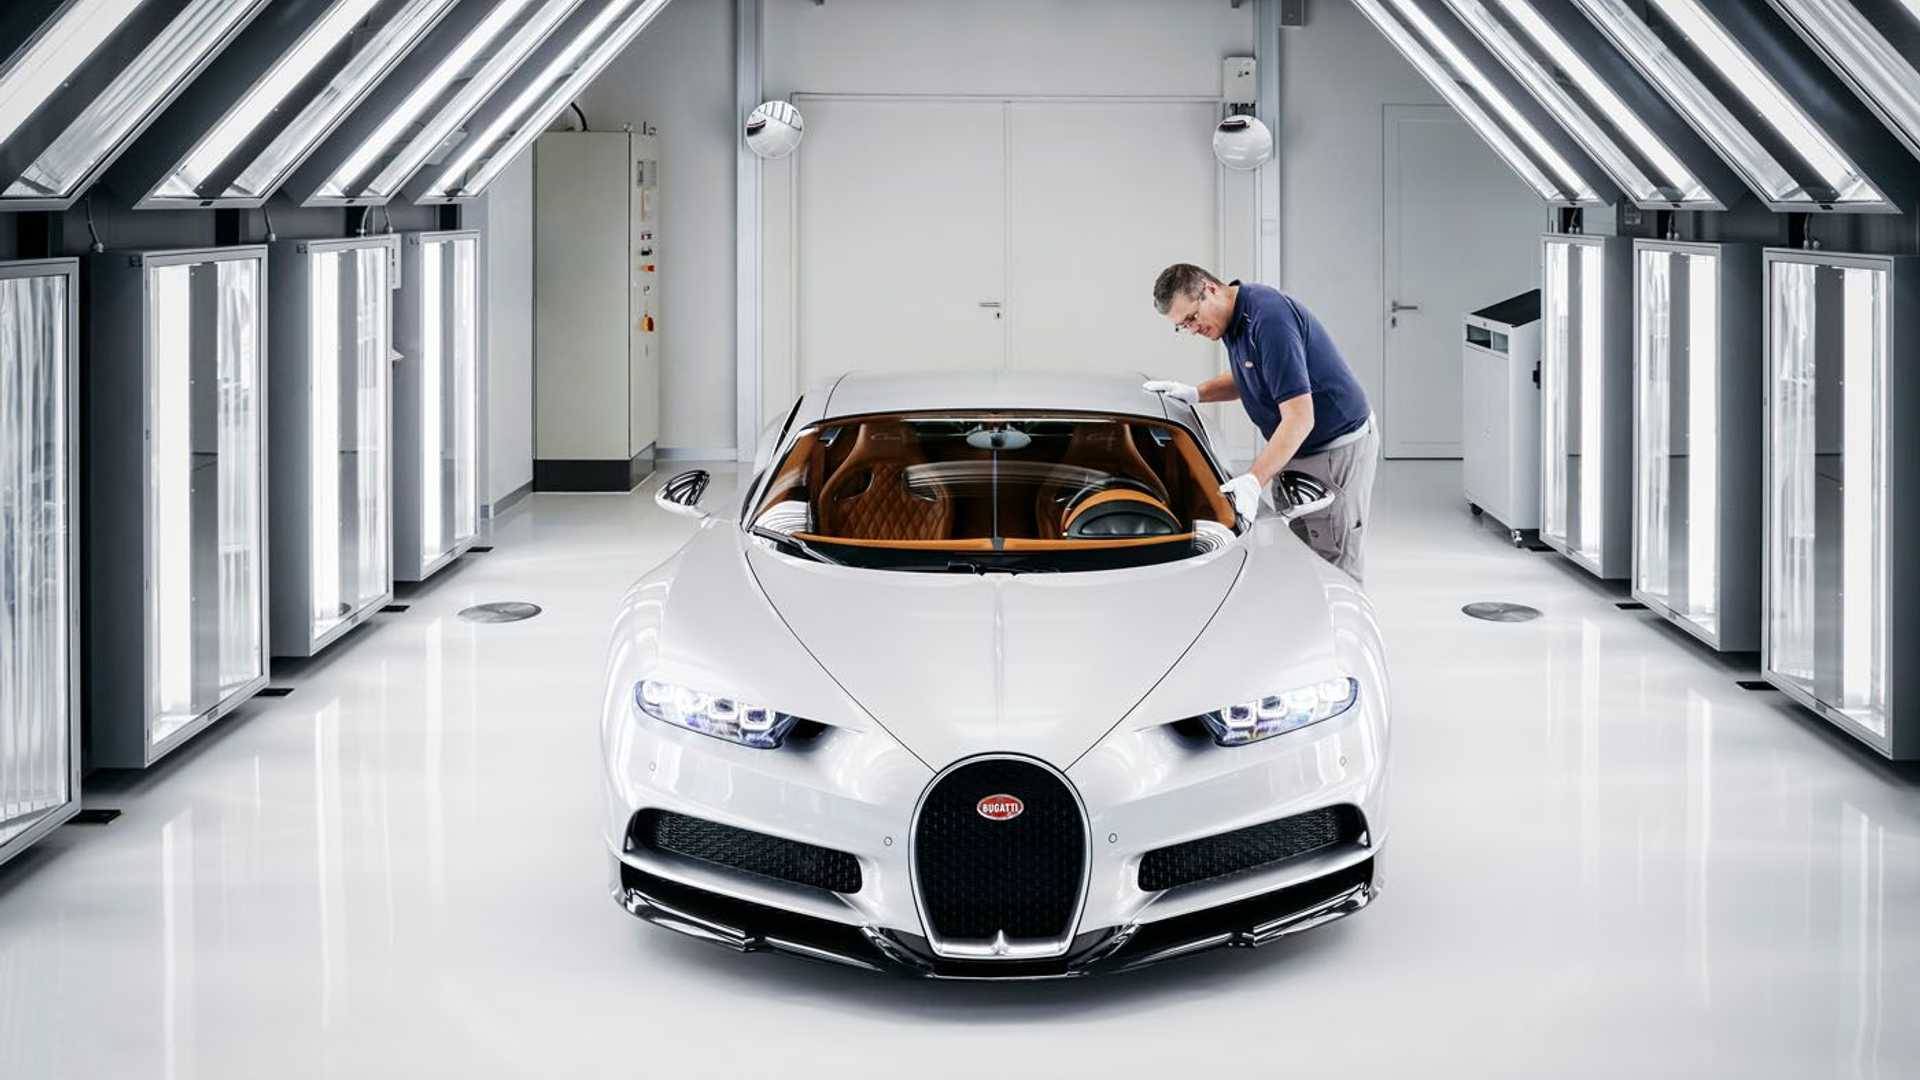 Bugatti mất 600 tới 700 giờ chỉ để sơn một xe - Ảnh 2.